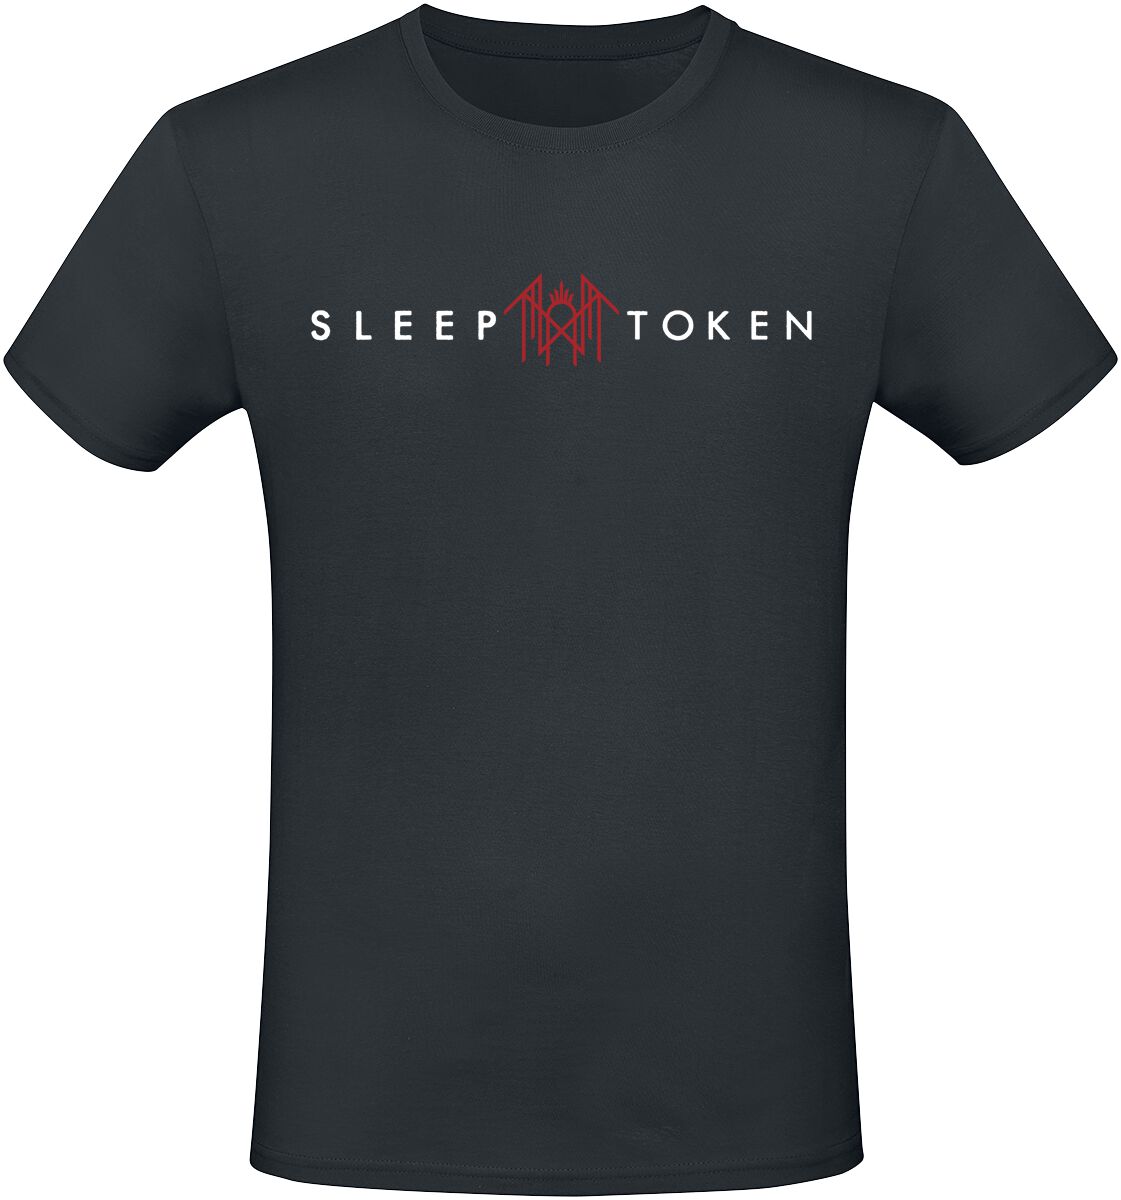 Sleep Token T-Shirt - Staff - S bis 4XL - für Männer - Größe 3XL - schwarz  - EMP exklusives Merchandise!